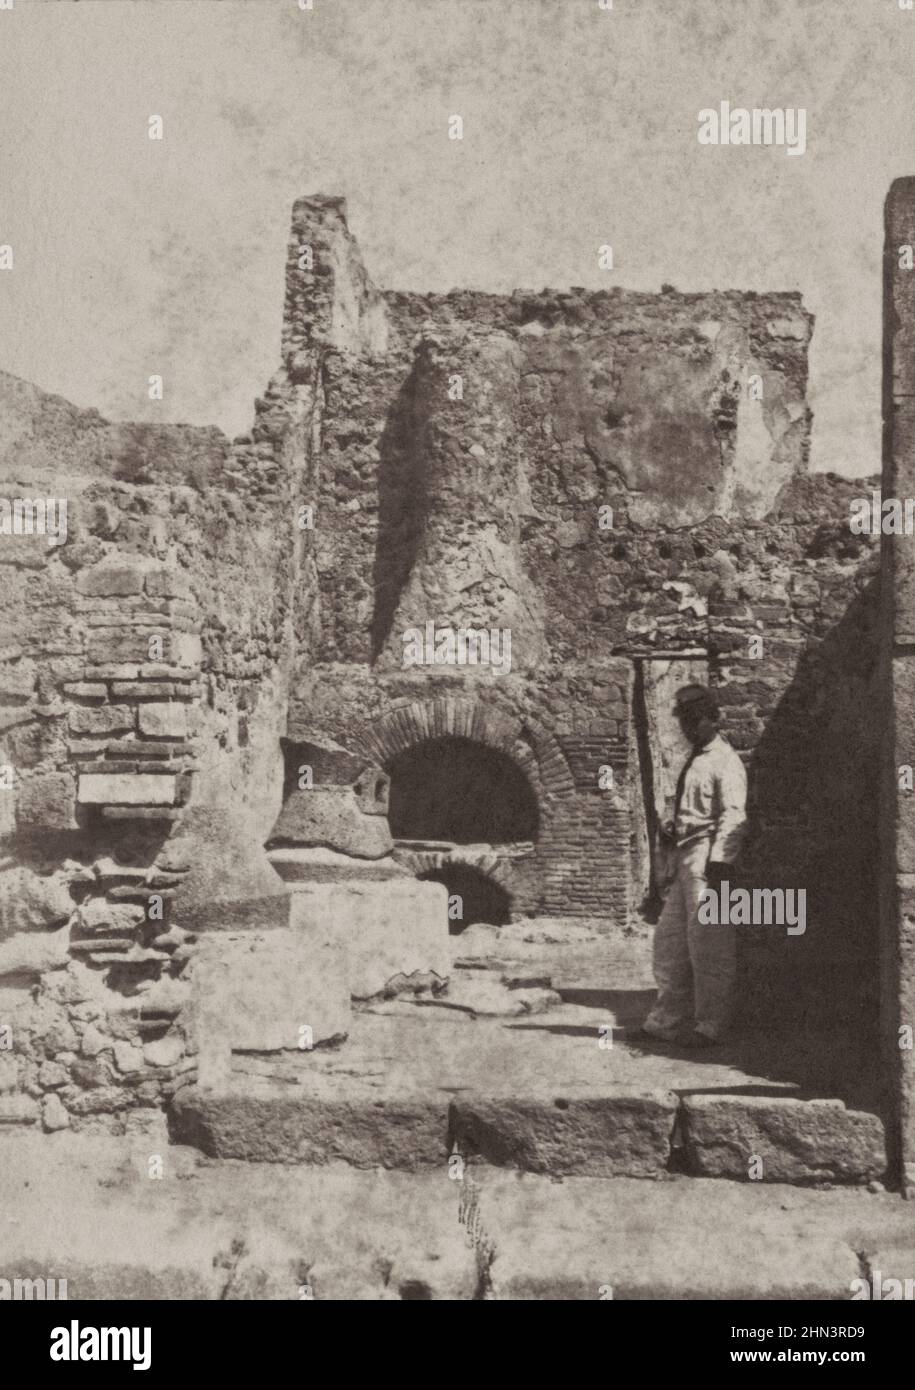 Amerikanischer Bürgerkrieg. Afroamerikanischer Soldat in Uniform am zerstörten Kamin oder Ofen, möglicherweise in Fort Sumter. USA. Zwischen 1863-1865 Stockfoto